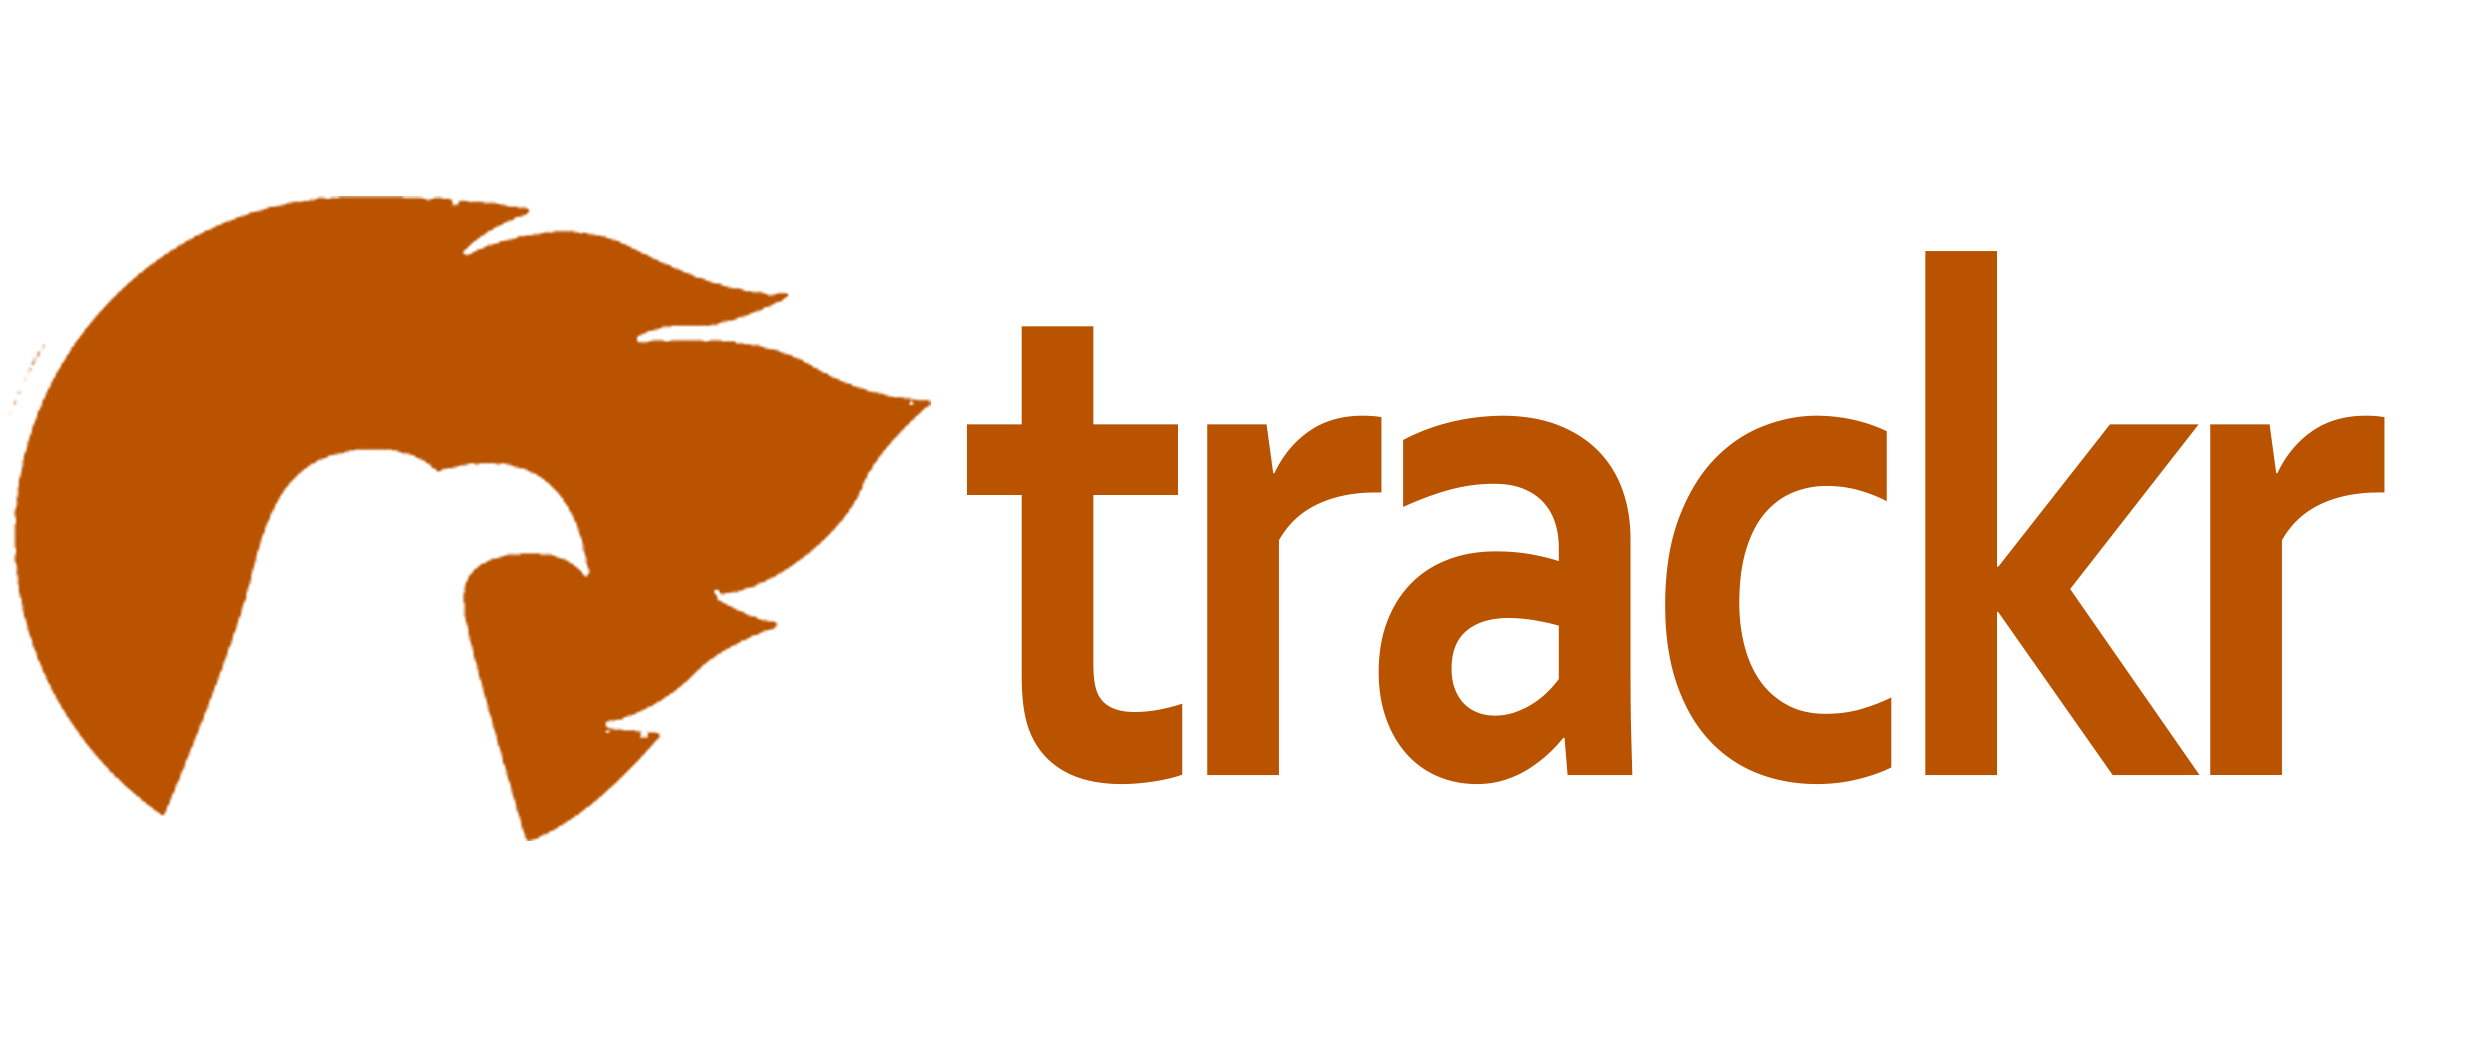 Trackr.id